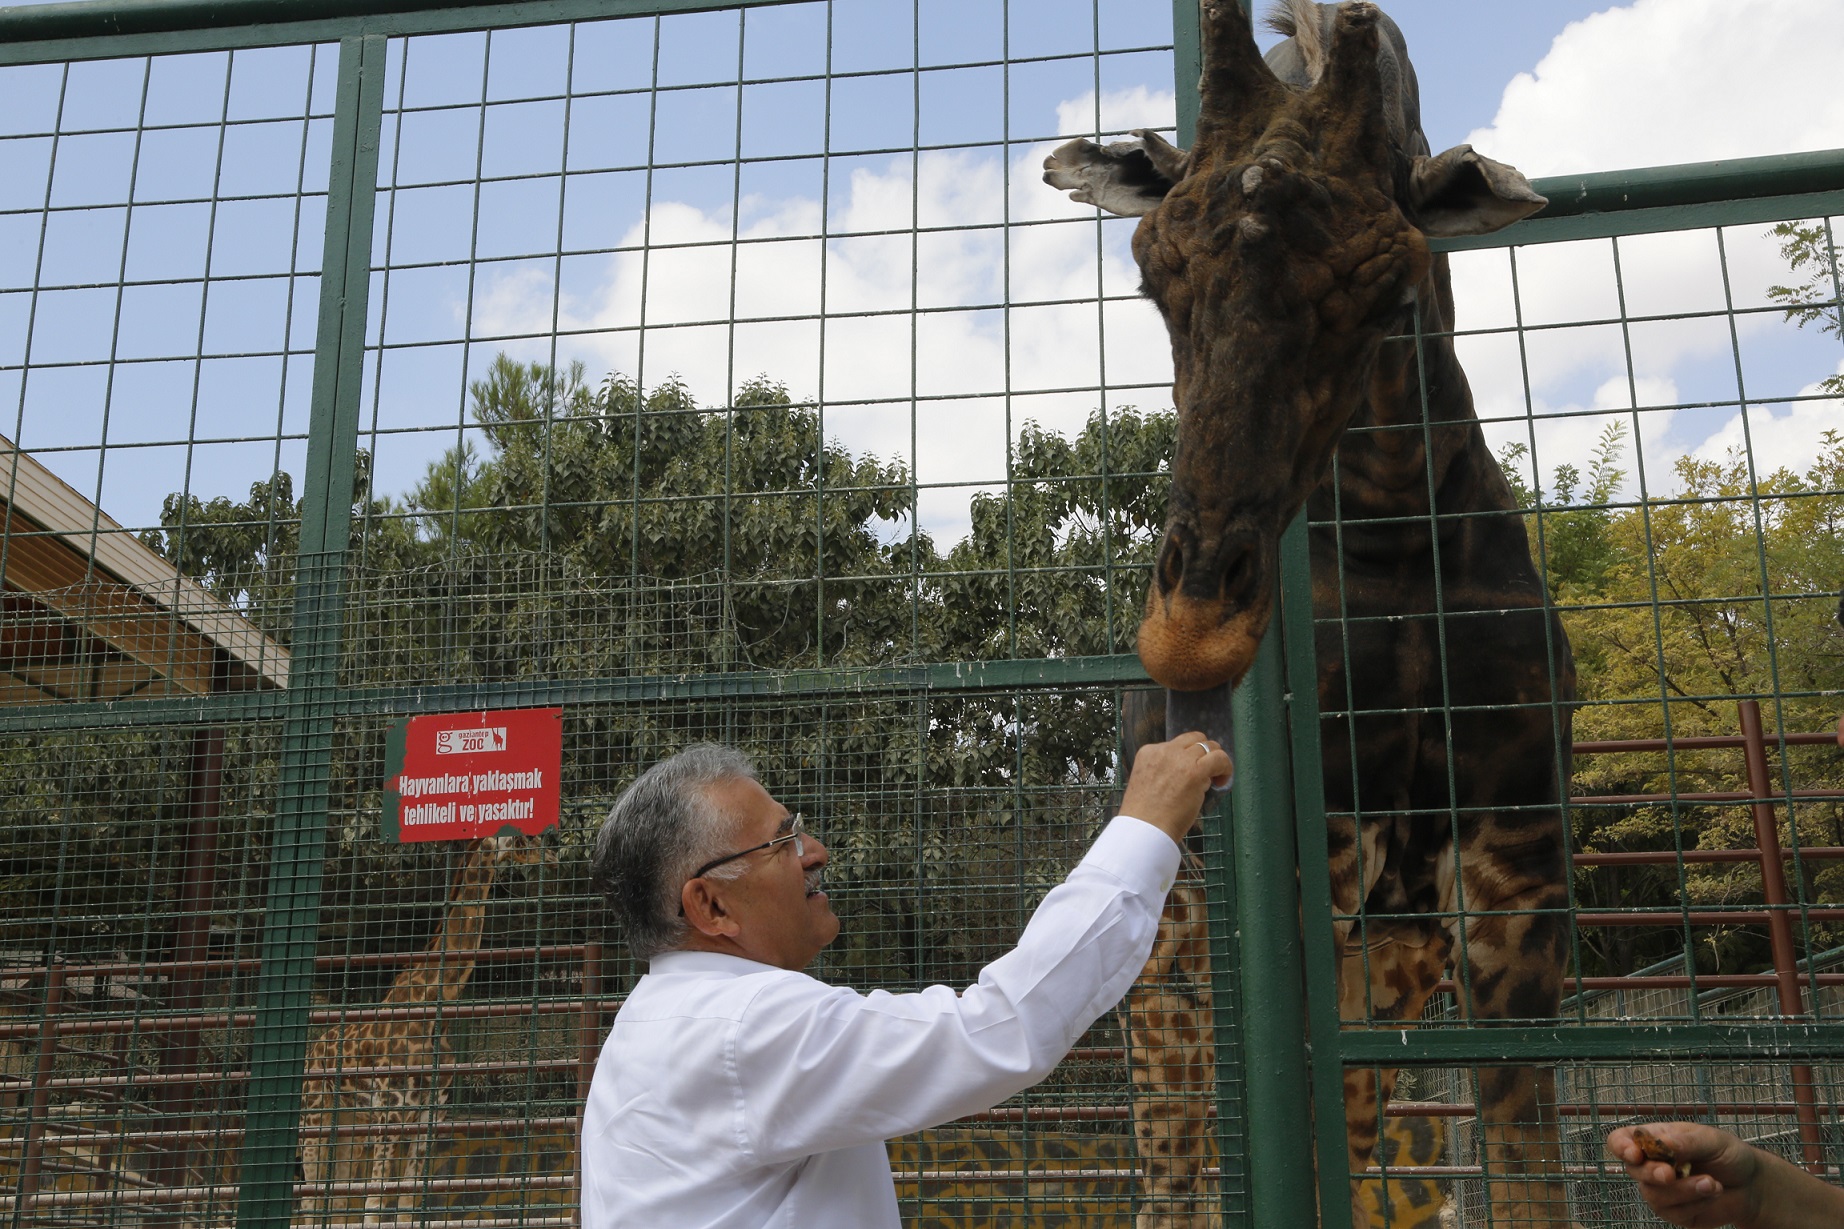 Büyükşehir Hayvanat Bahçesi, Kurban Bayramı’nda Ücretsiz